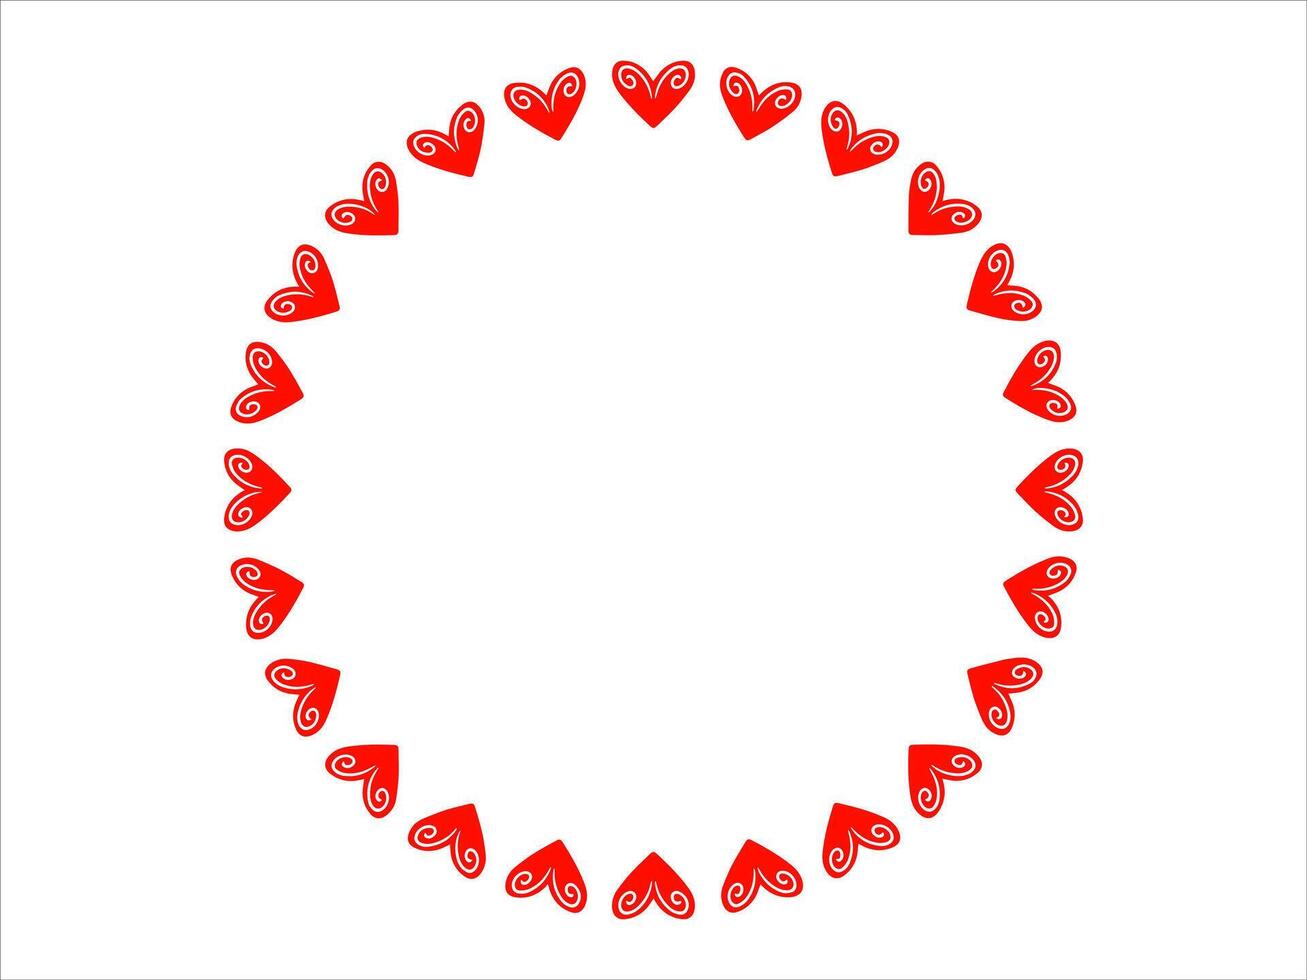 Valentinsgrüße Herz Hintergrund zum Dekoration vektor